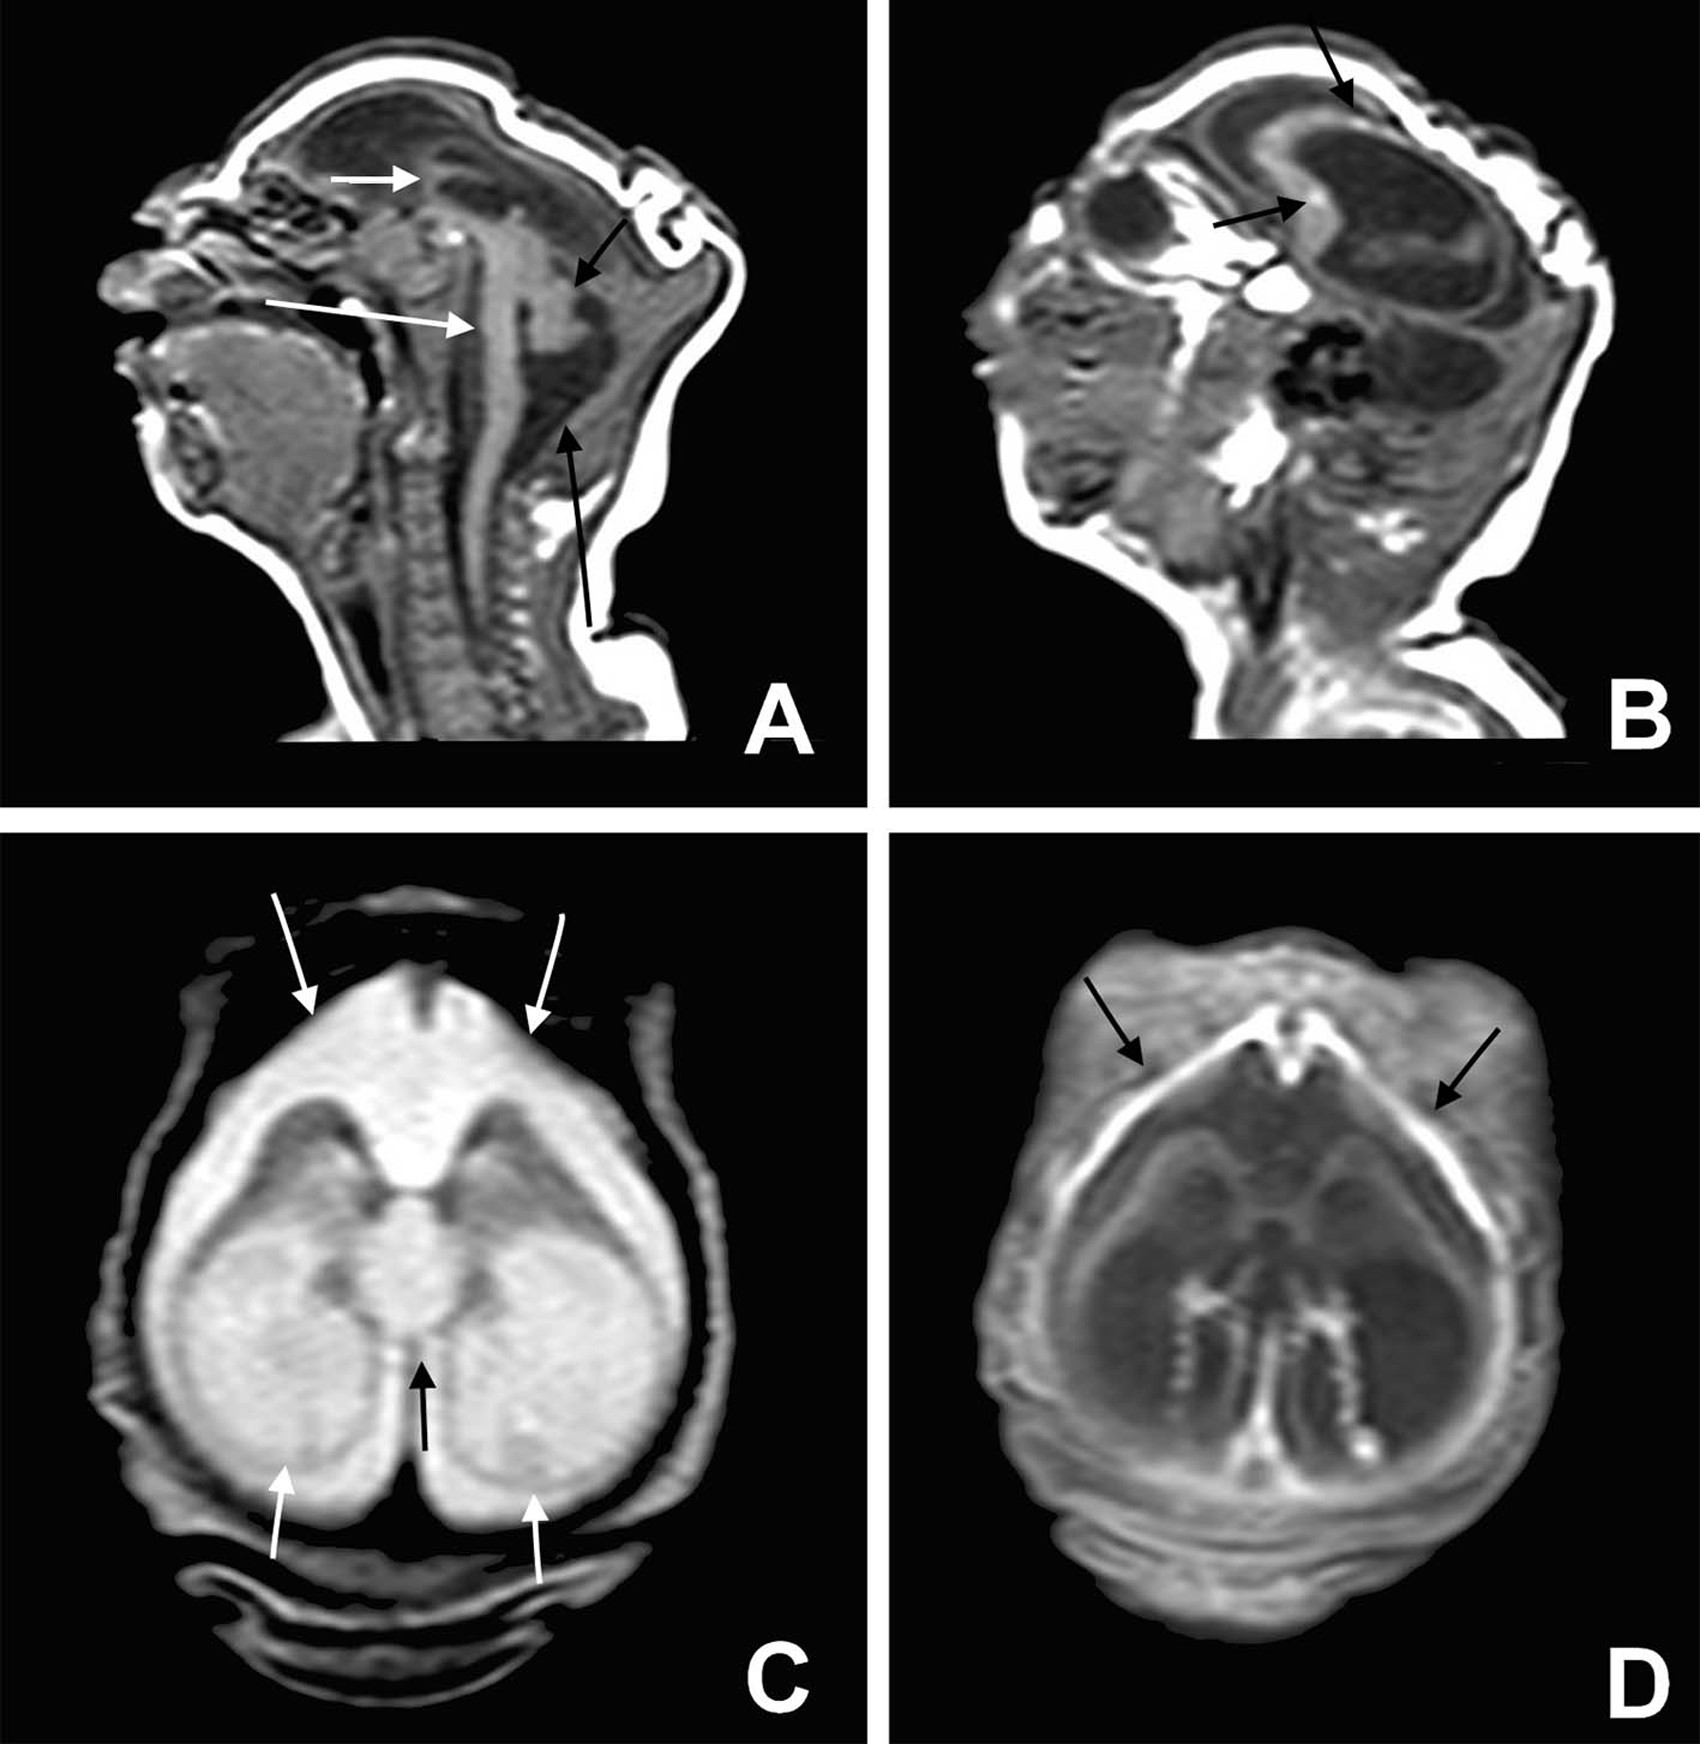  Exame de imagem revela danos cerebrais de bebês com microcefalia (Foto:  BMJ 2015/ http://www.bmj.com/cgi/doi/10.1136/bmj.i1901 )